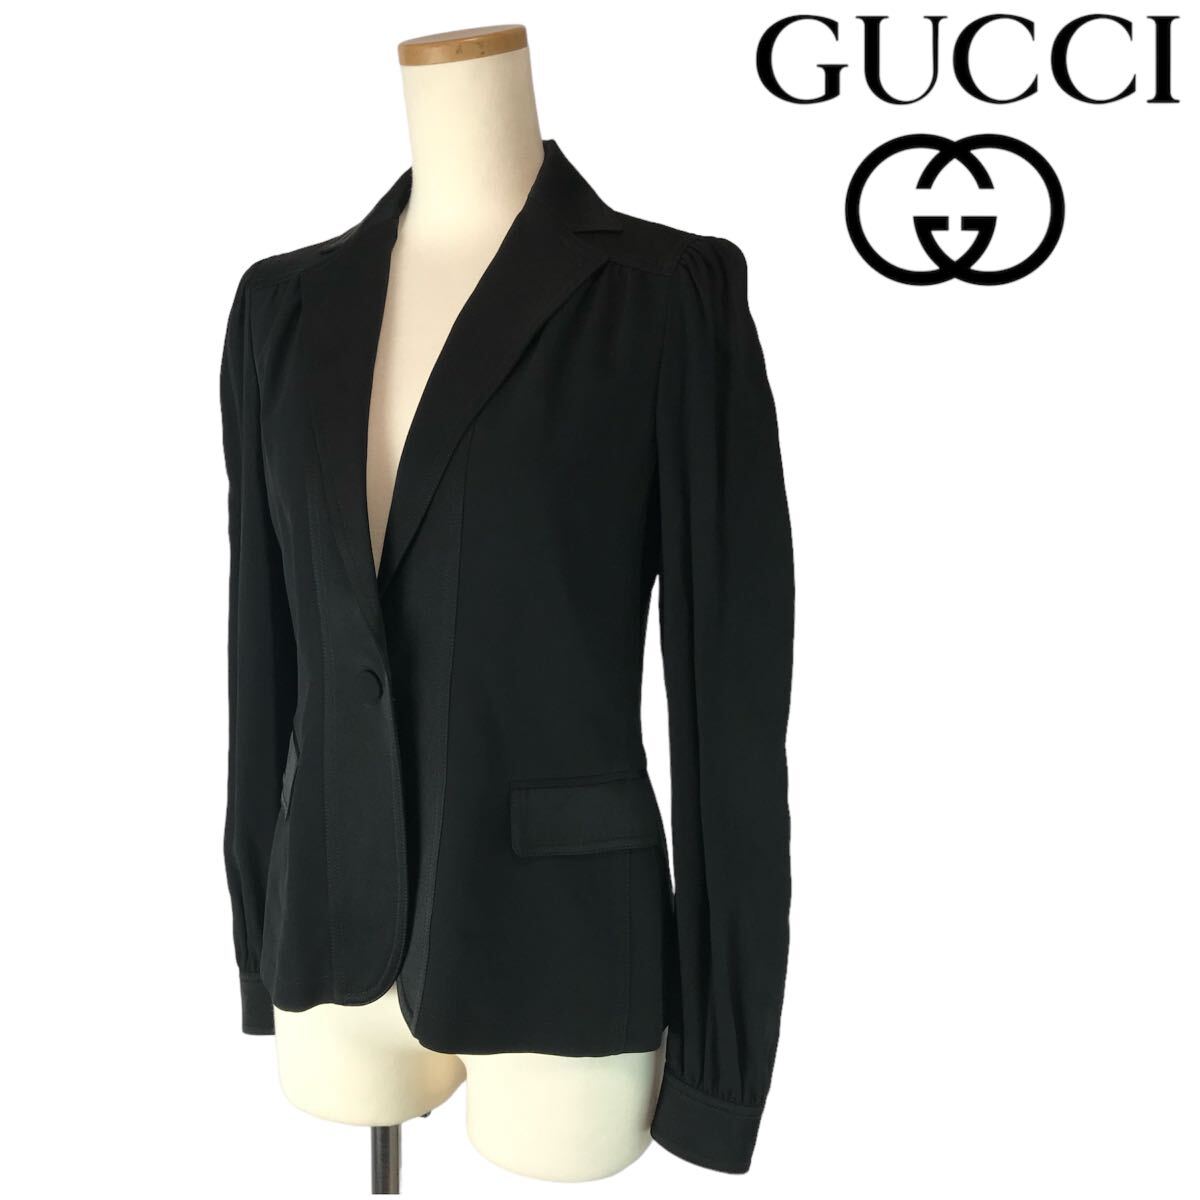 h233 GUCCI グッチ 2015 テーラードジャケット シャツジャケット ブラック イタリア製 40 フォーマル ビジネス アウター 正規品_画像2